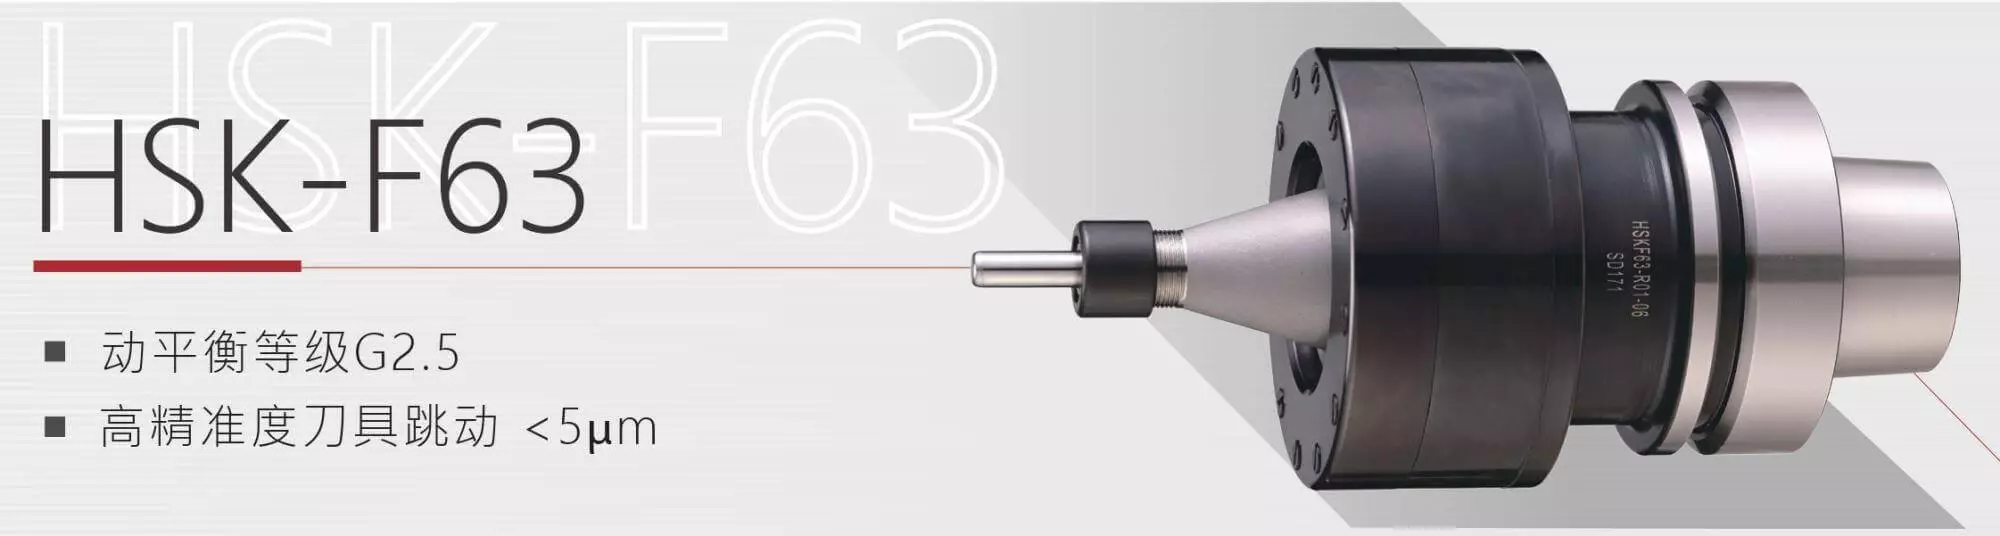 超声波刀把HSK-F63产品说明图-汉鼎智慧科技